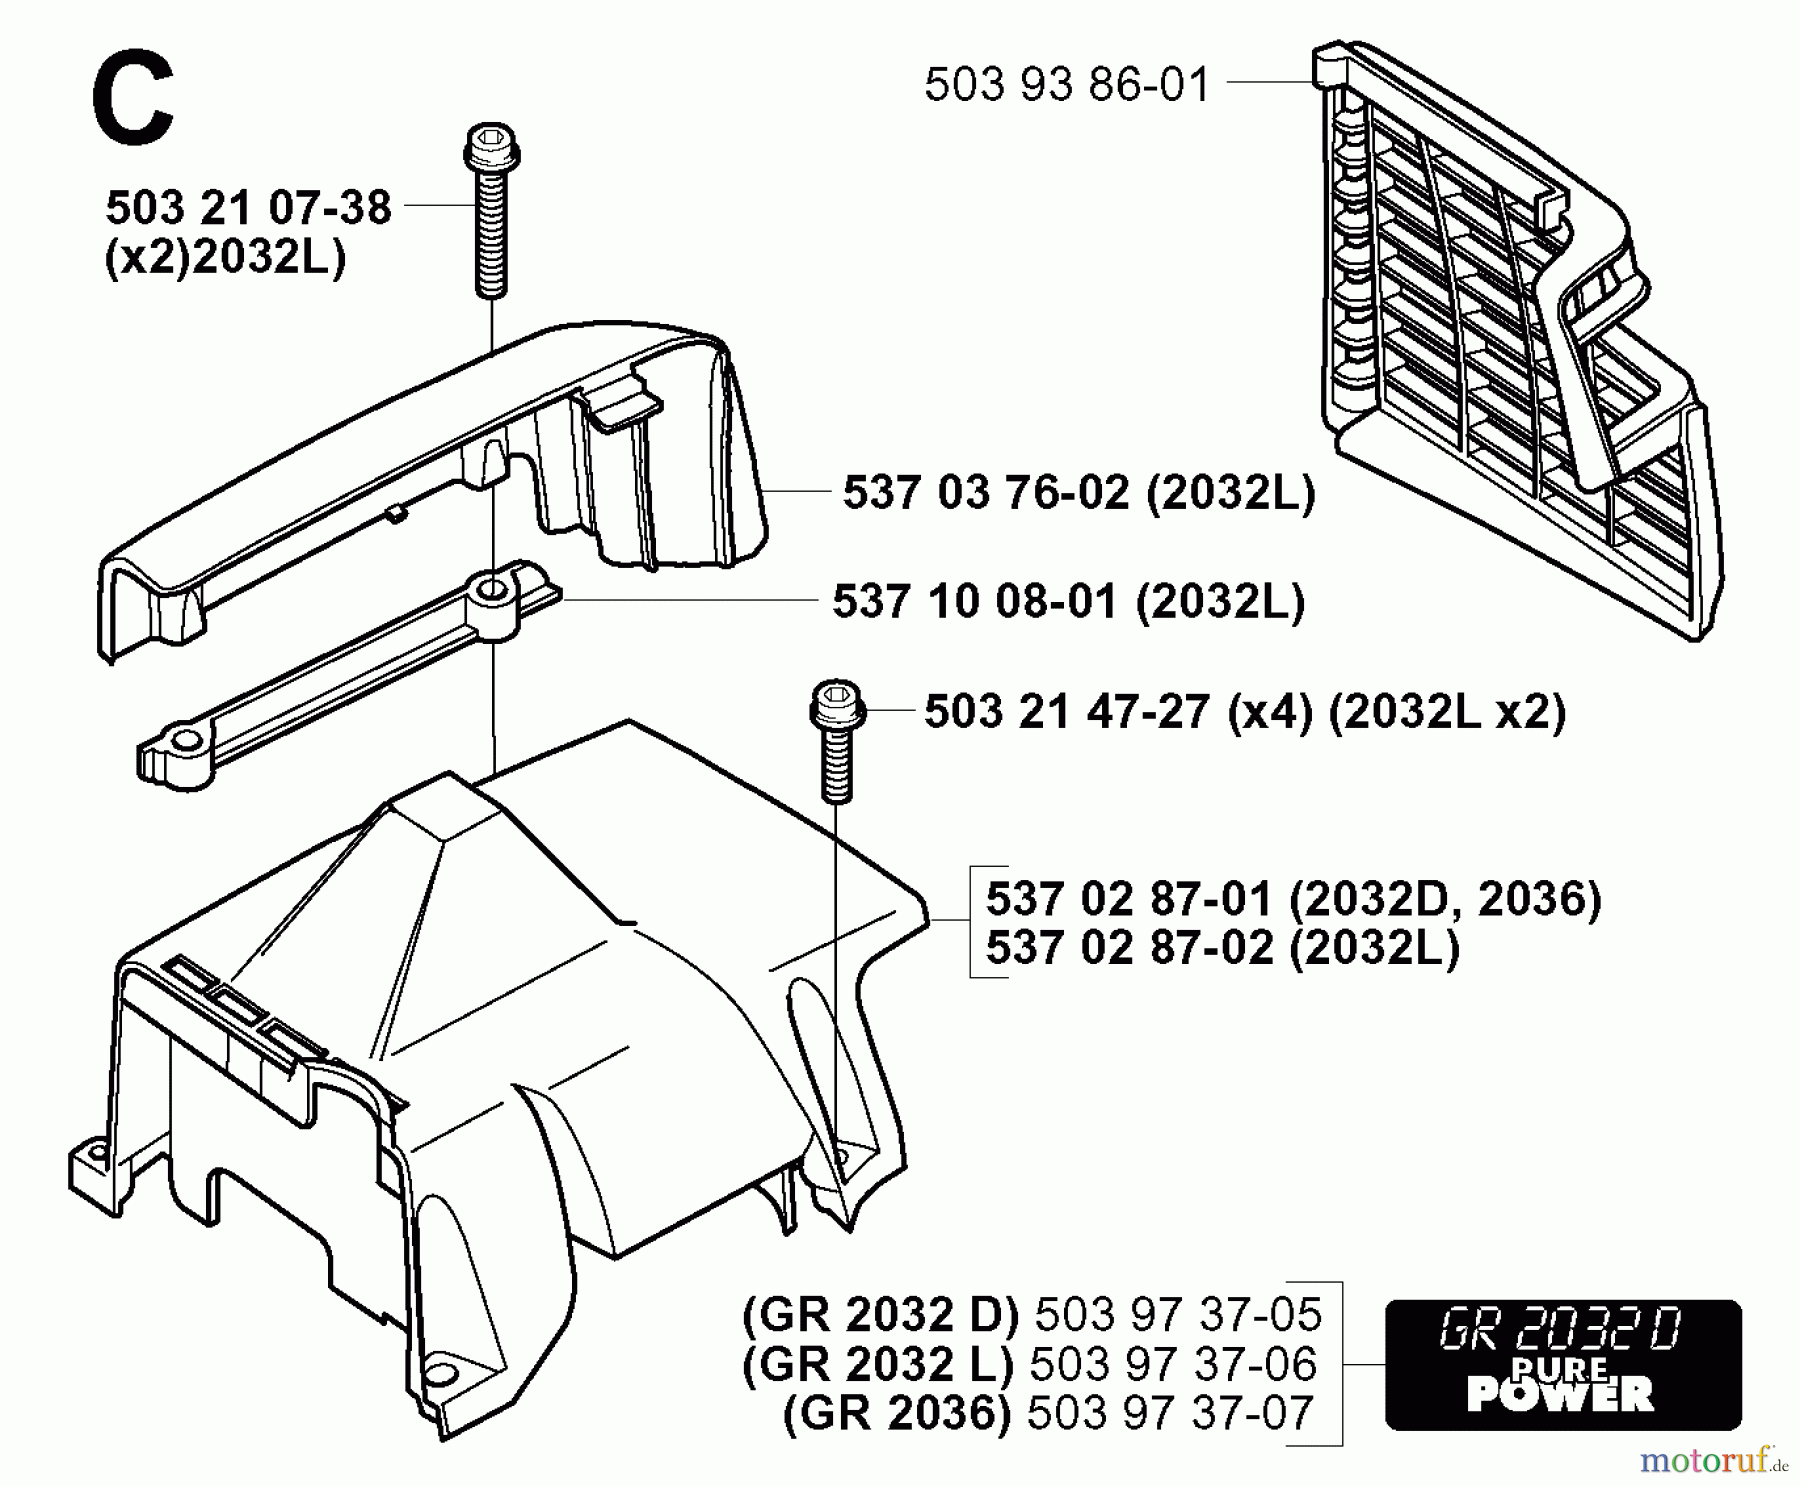  Jonsered Motorsensen, Trimmer GR2036 - Jonsered String/Brush Trimmer (2000-10) COVER